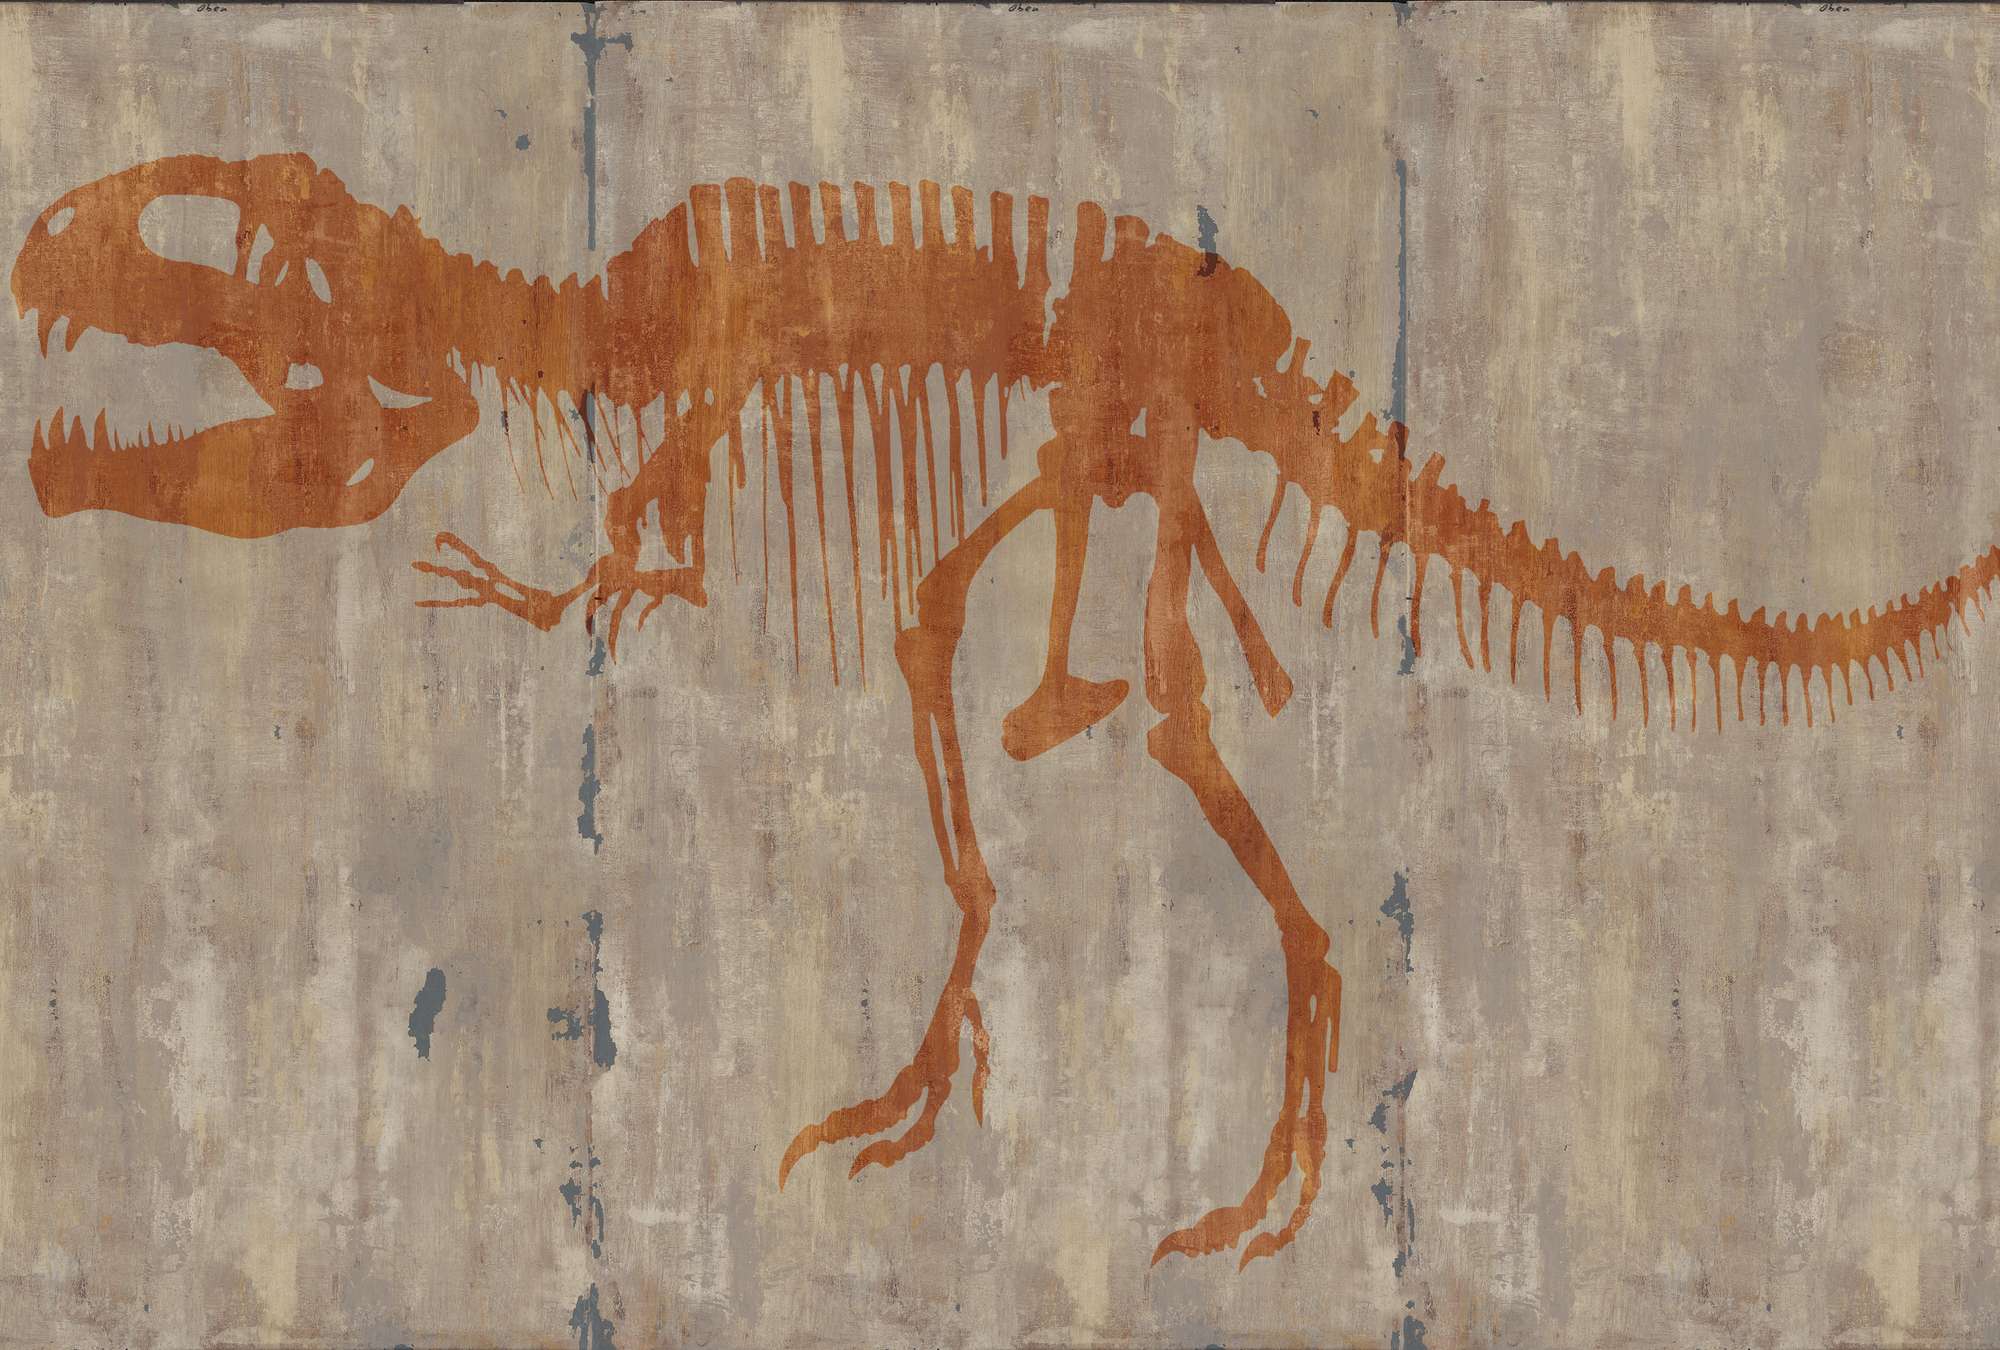             Papier peint peinture rupestre d'un T-Rex
        